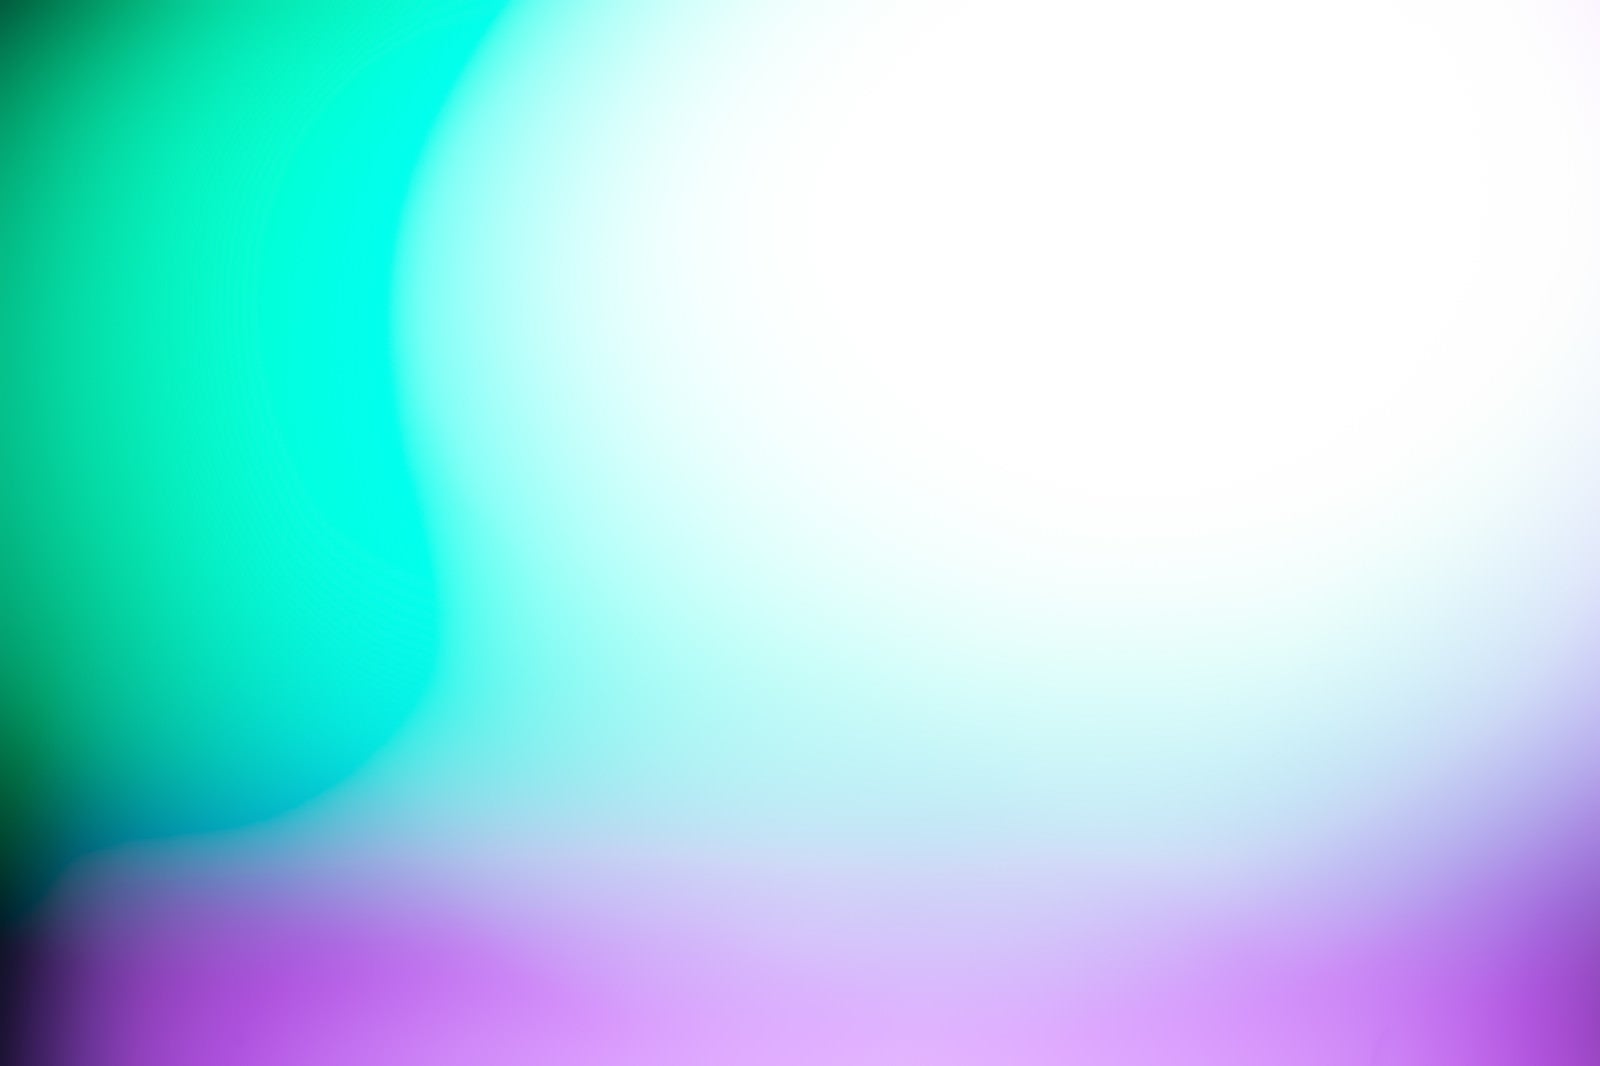 「緑と紫の光」の写真